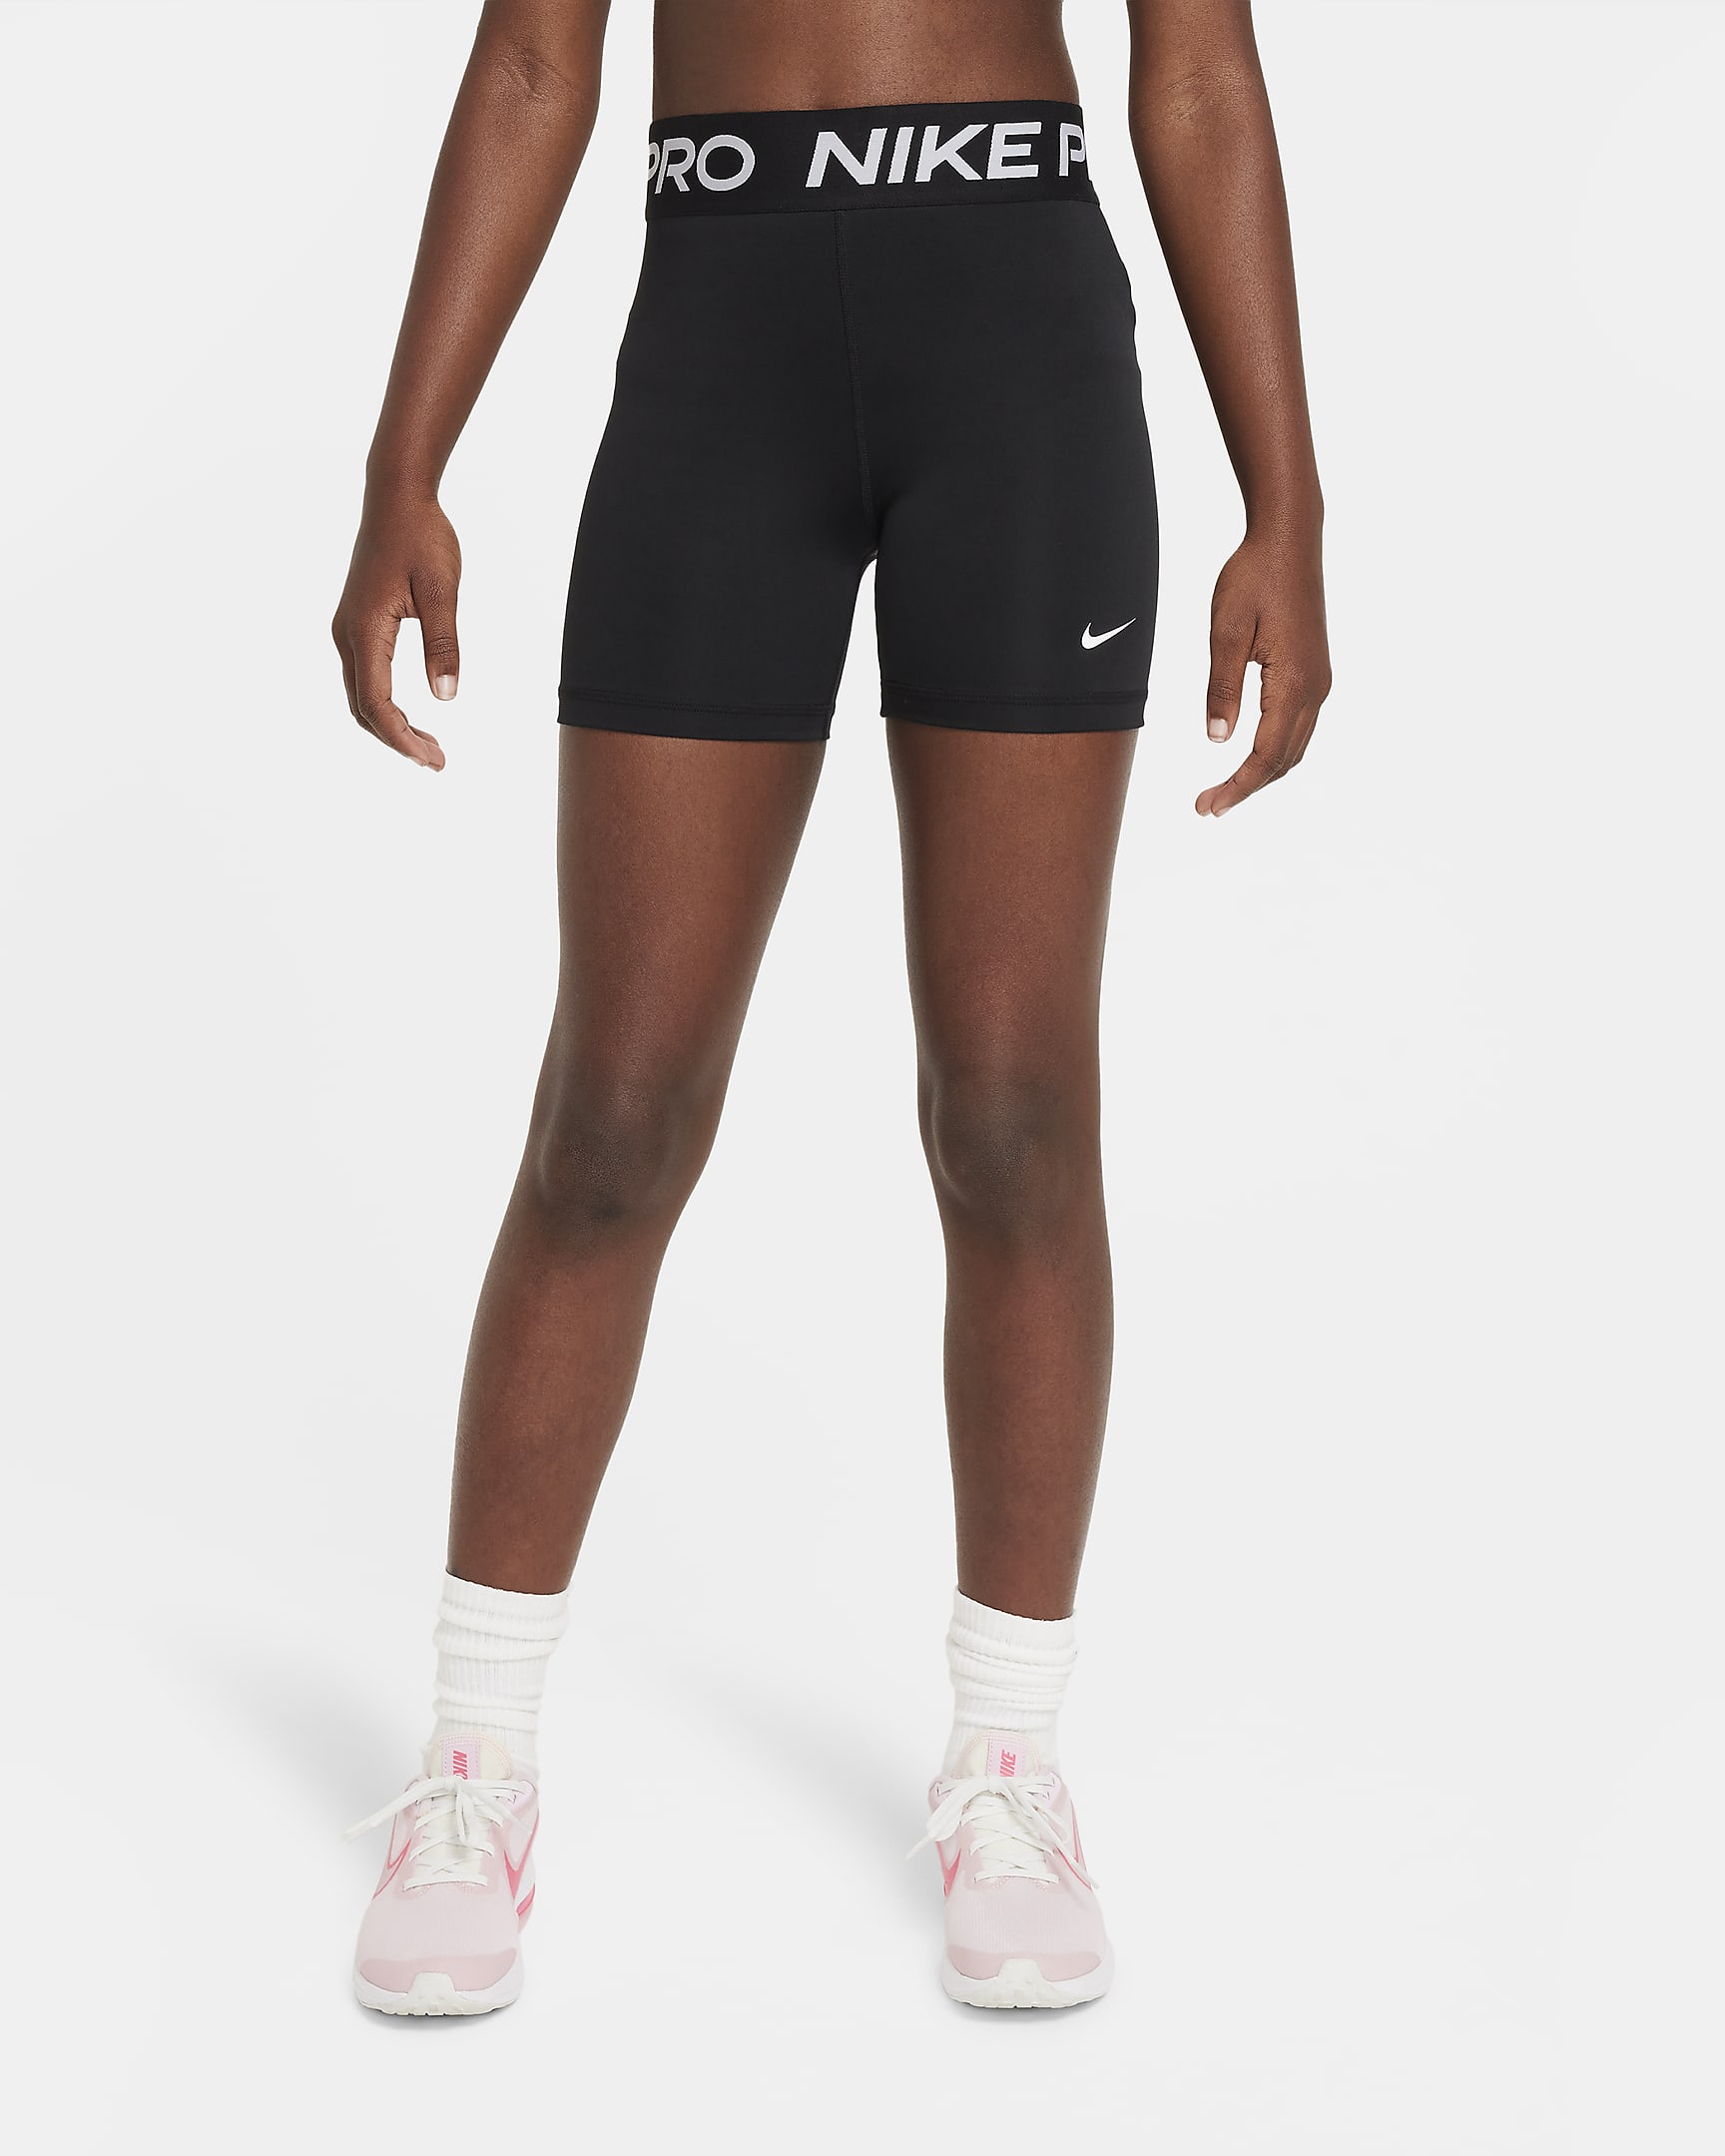 Nike Pro Meisjesshorts - Zwart/Wit